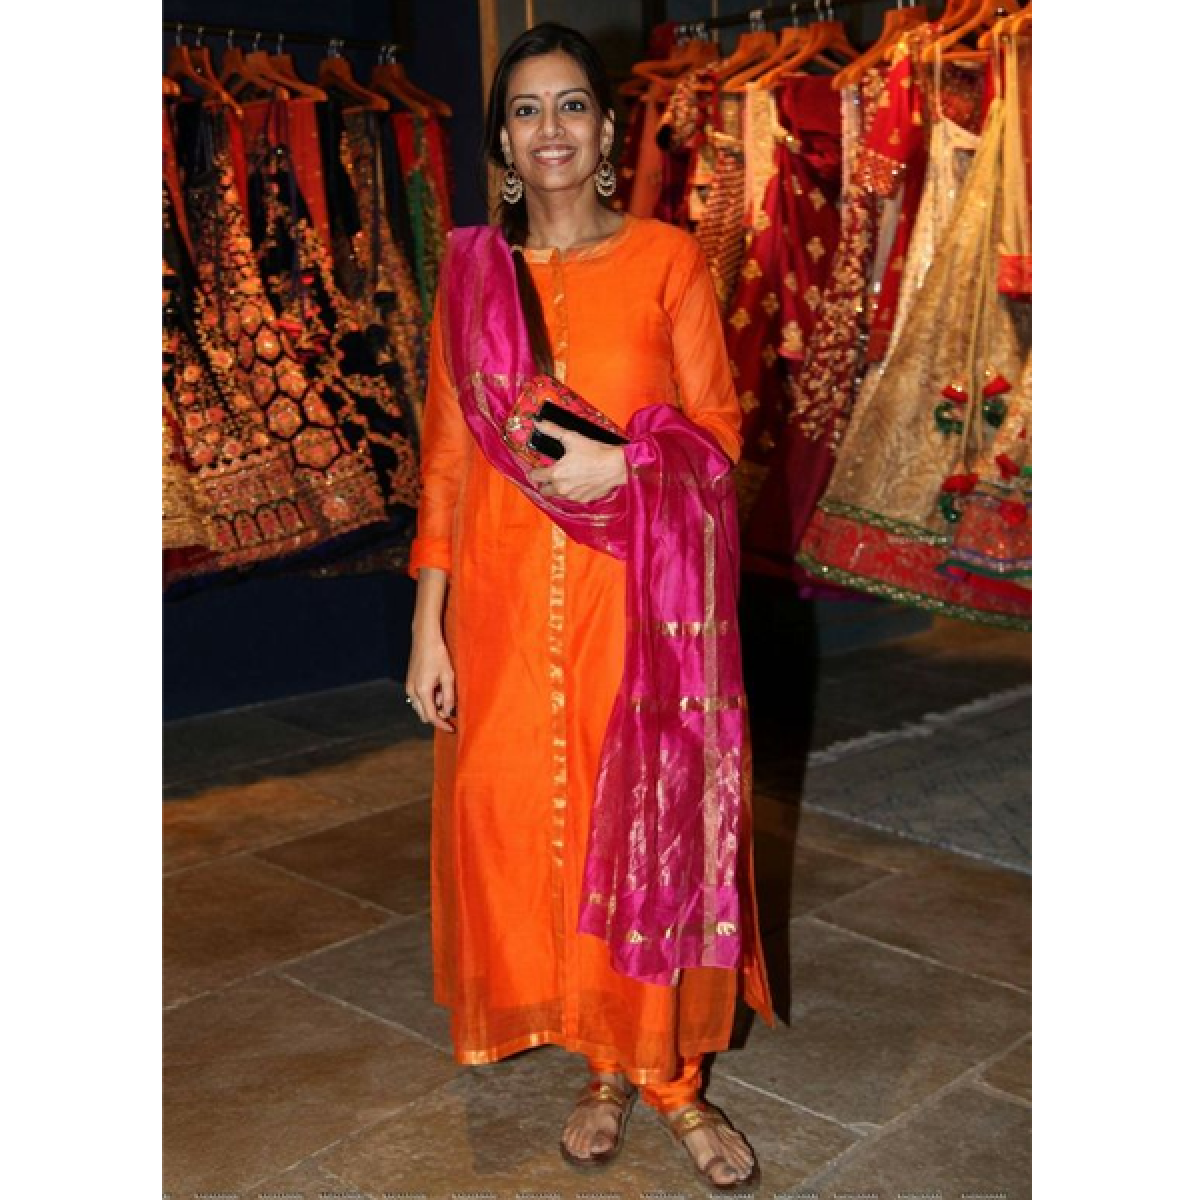 Look Regal in Our Banarasi Silk Sarees Collection – Sareeko